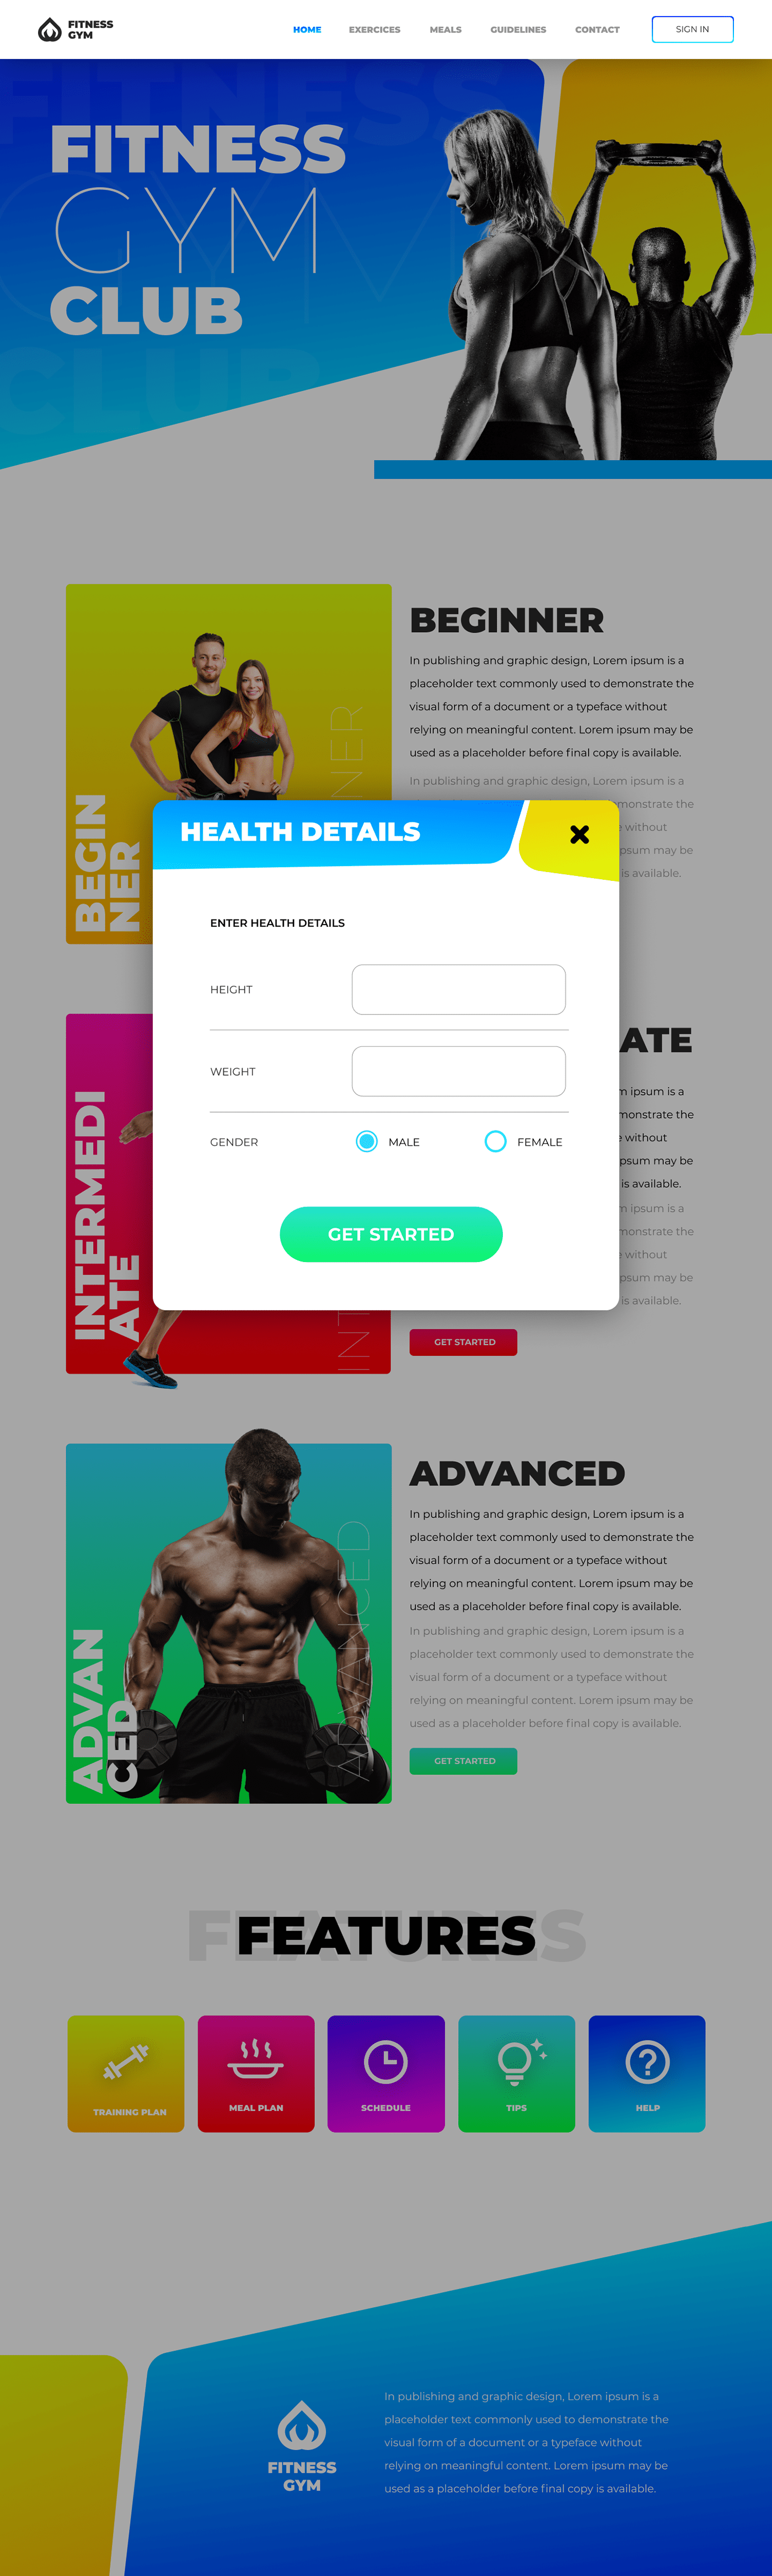 app design application design Figma fitness gym gym app Mobile app ui design UI/UX